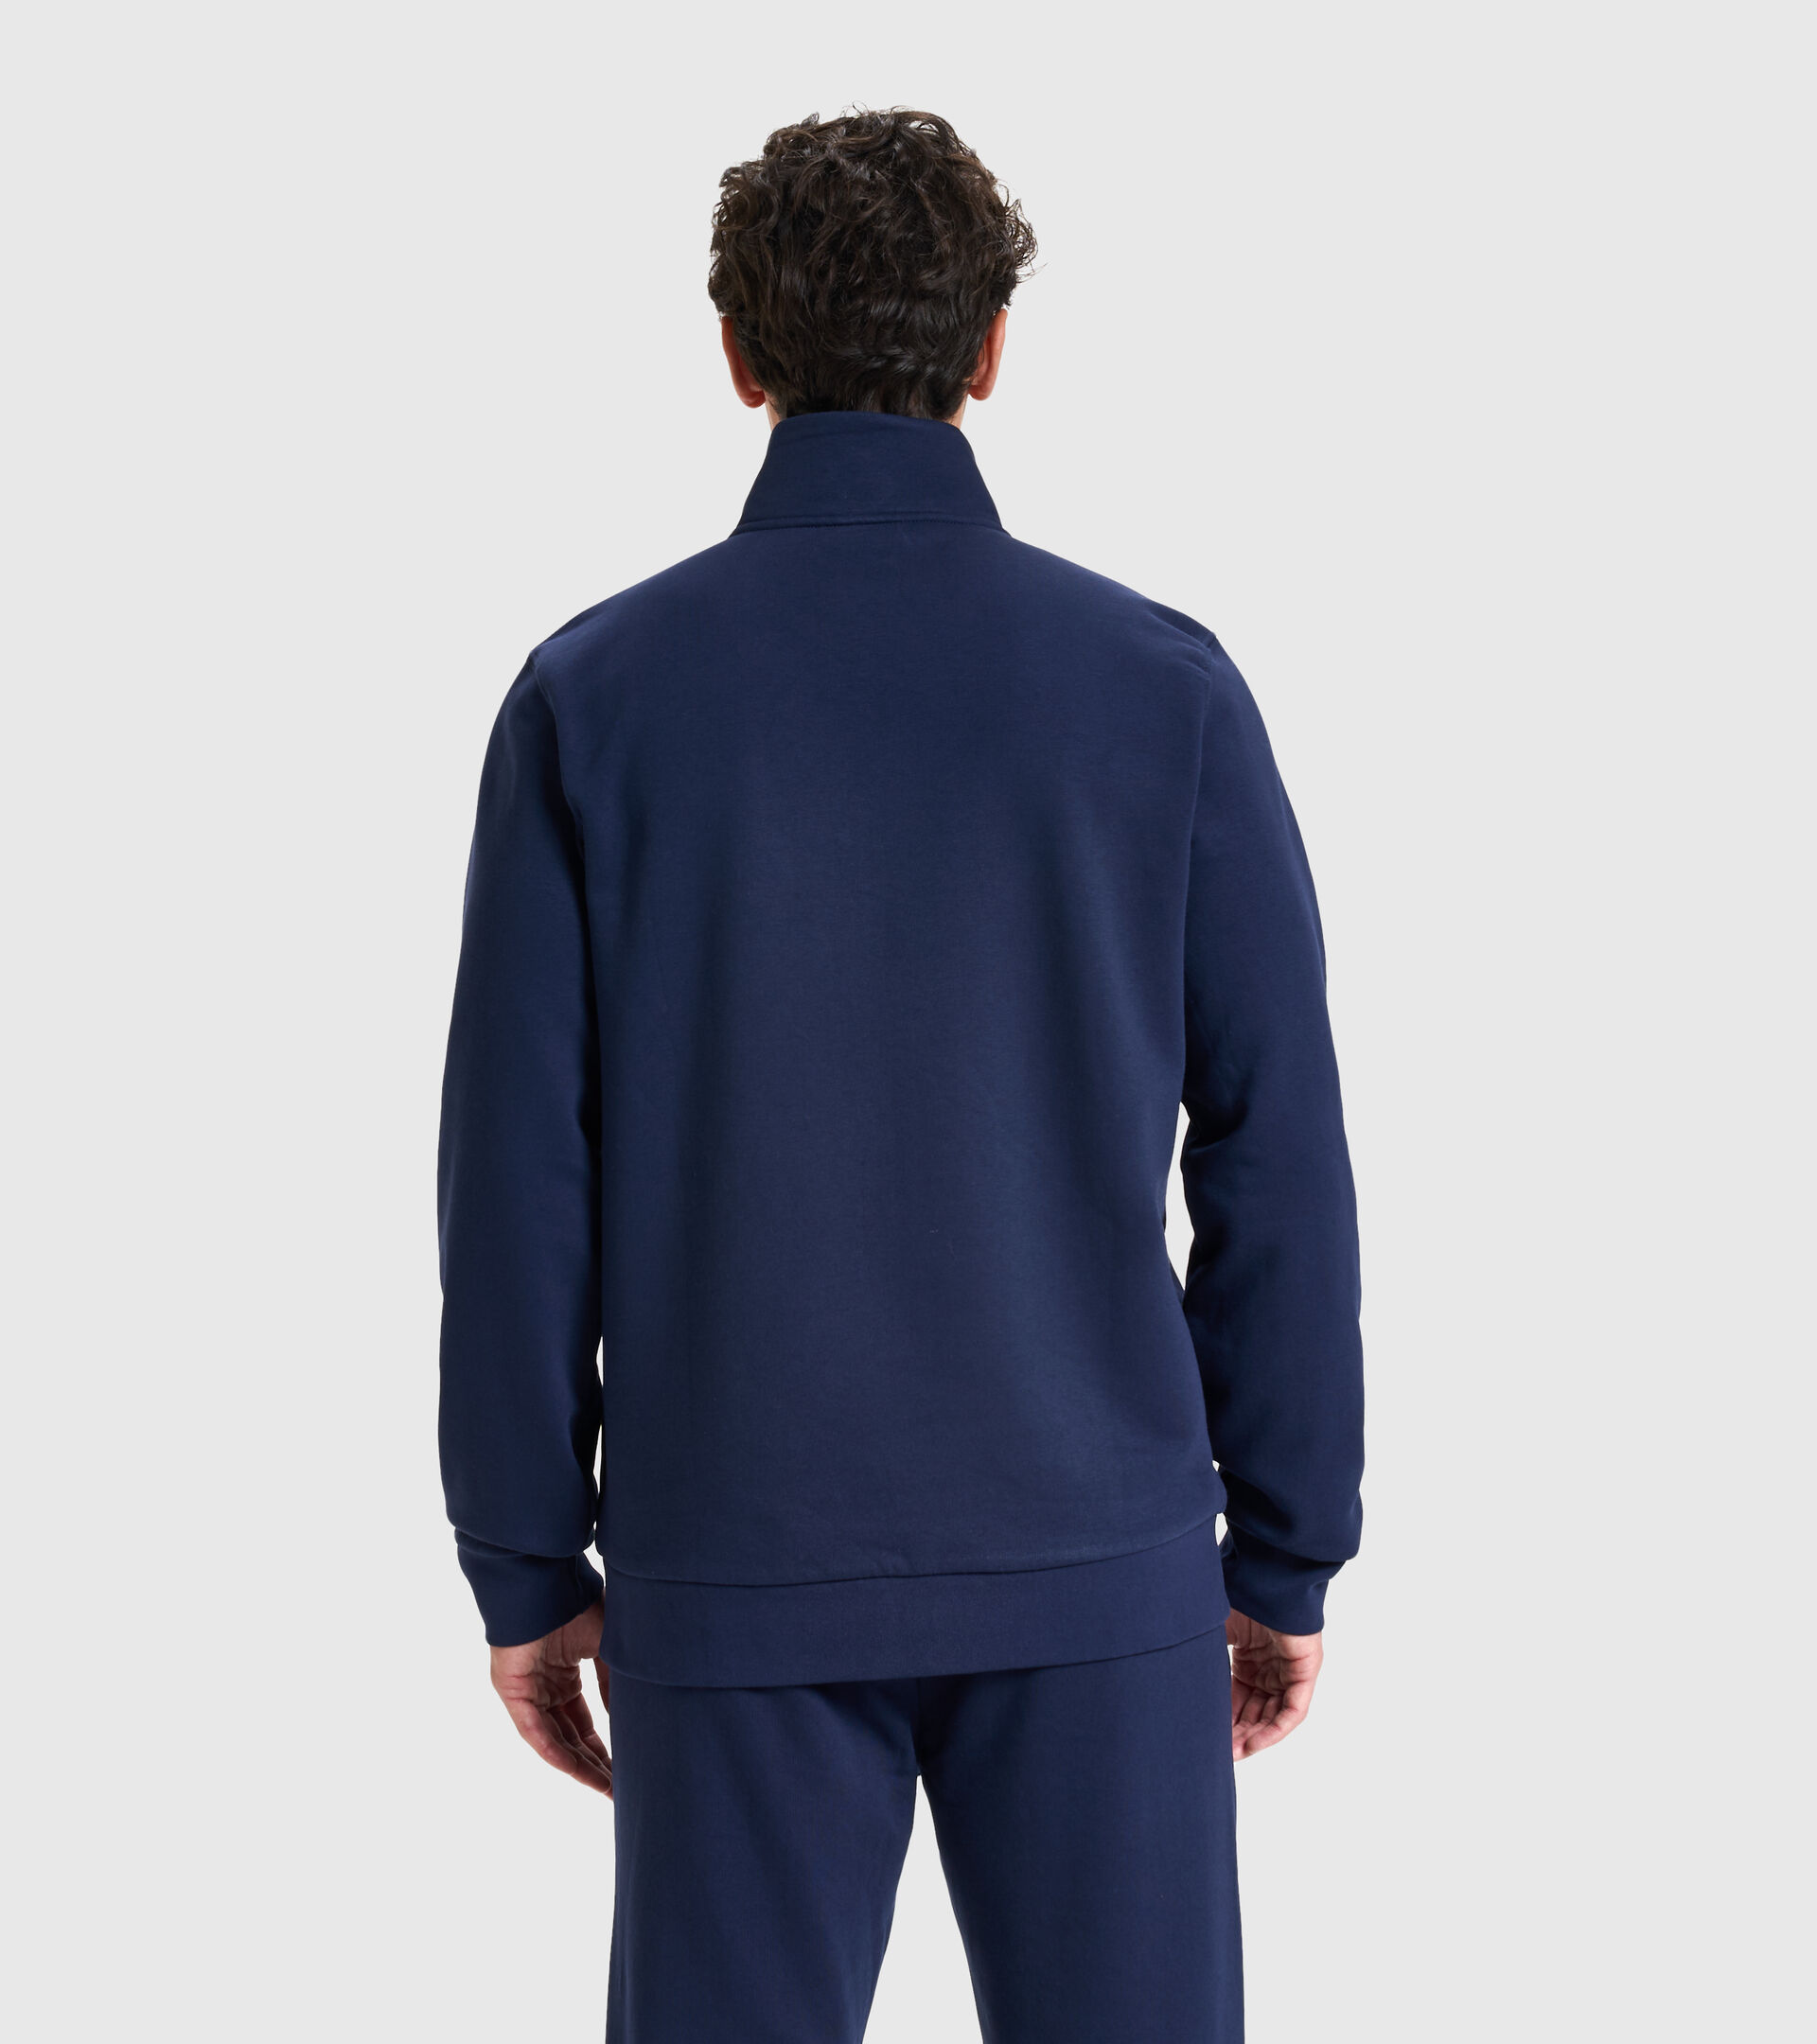 Sweater mit Rundhalsausschnitt - Herren SWEAT FZ CORE CABAN BLAU - Diadora